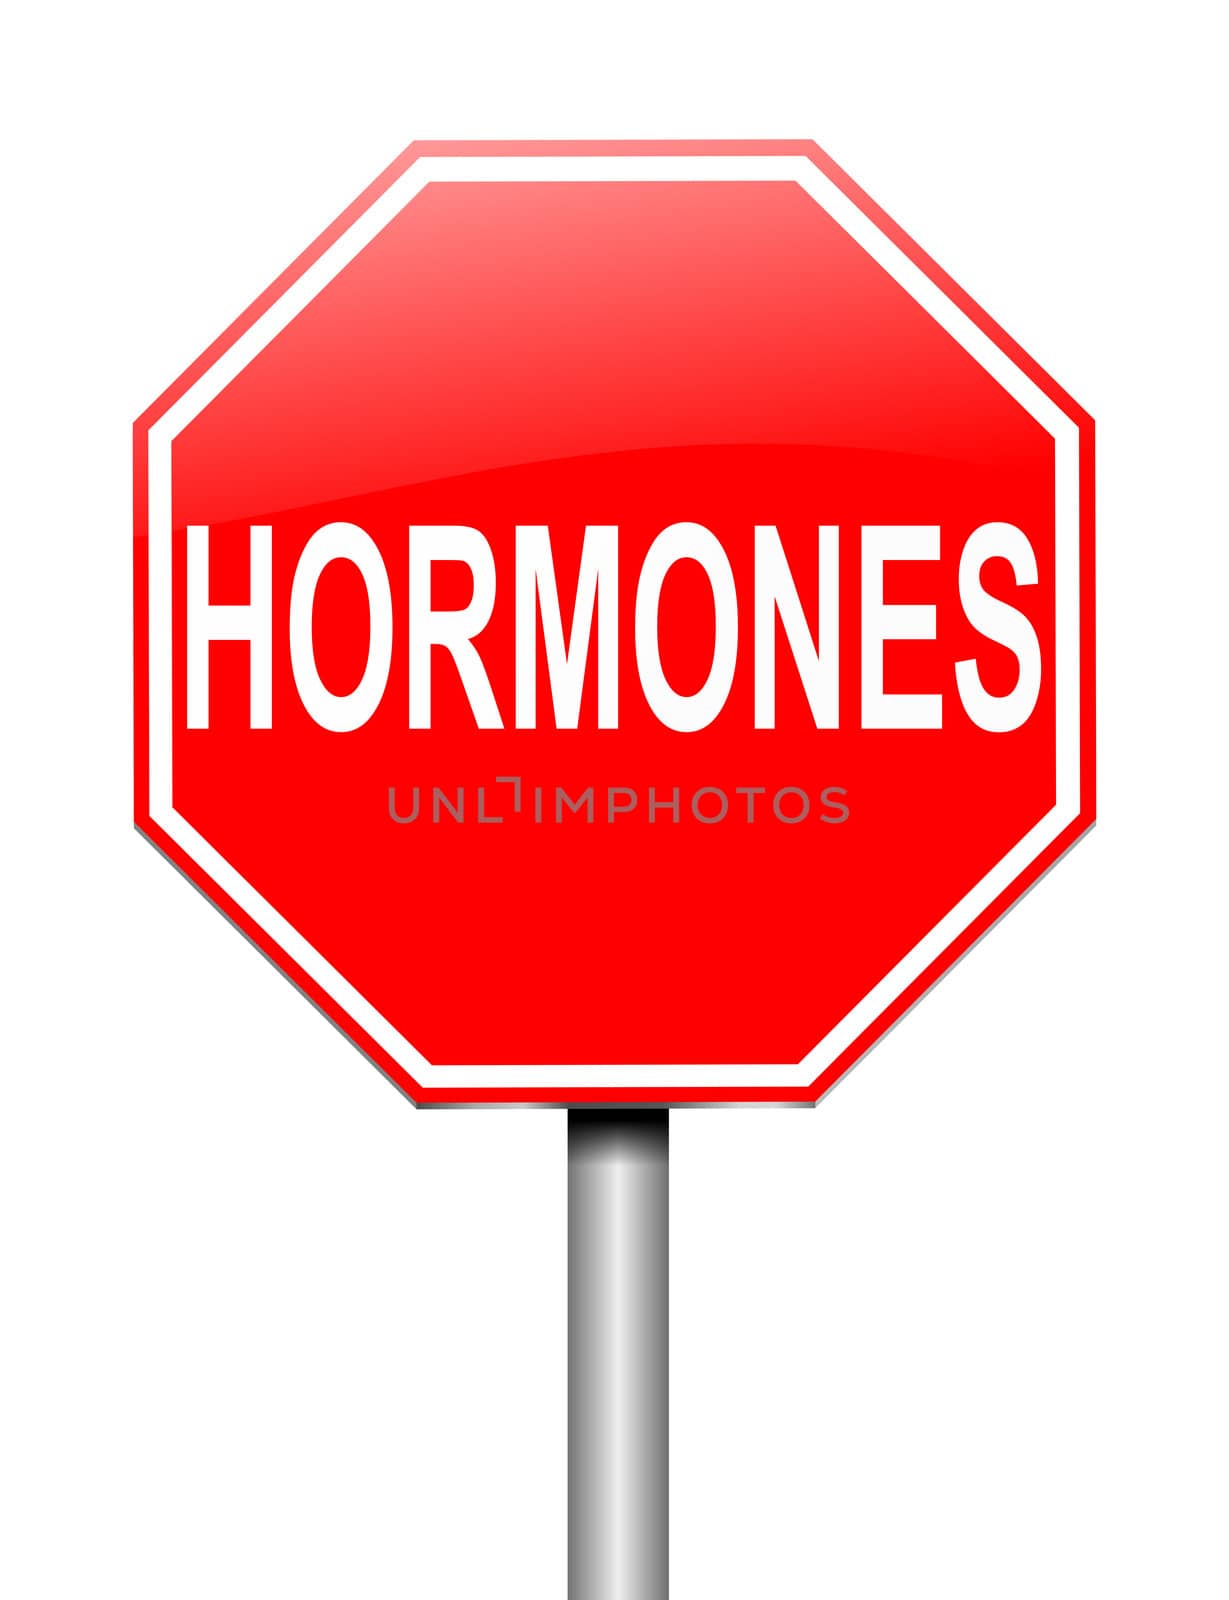 Hormones concept. by 72soul